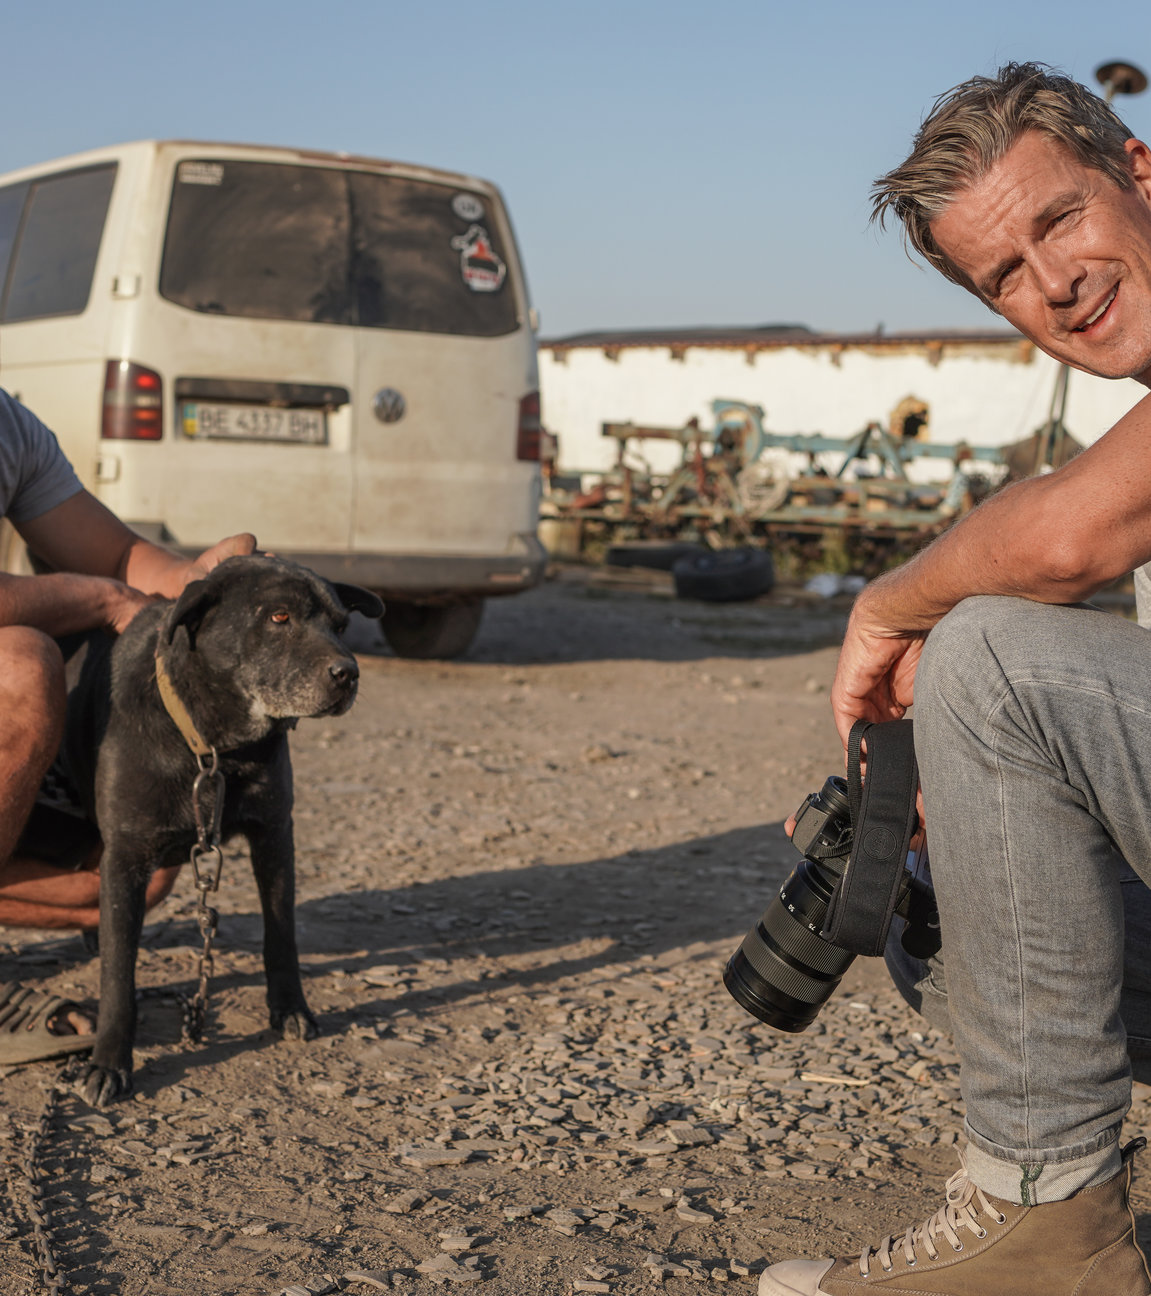 "Markus Lanz: Ukraine - Leben mit dem Krieg": Der Bauer Vitaliy und Markus Lanz sitzen in der Hocke auf einer Straße. Vitaliy streichelt seinen Hund, während Markus Lanz in die Kamera sieht.